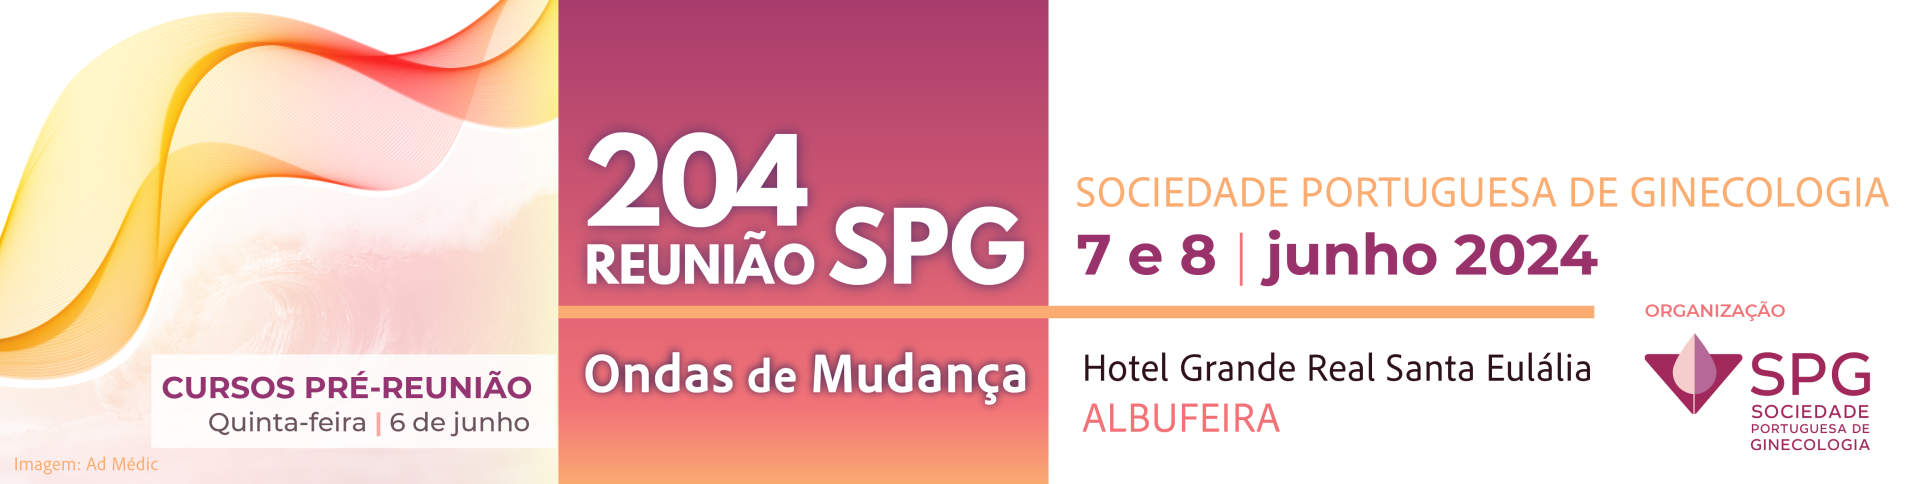 204 Reunio da Sociedade Portuguesa de Ginecologia